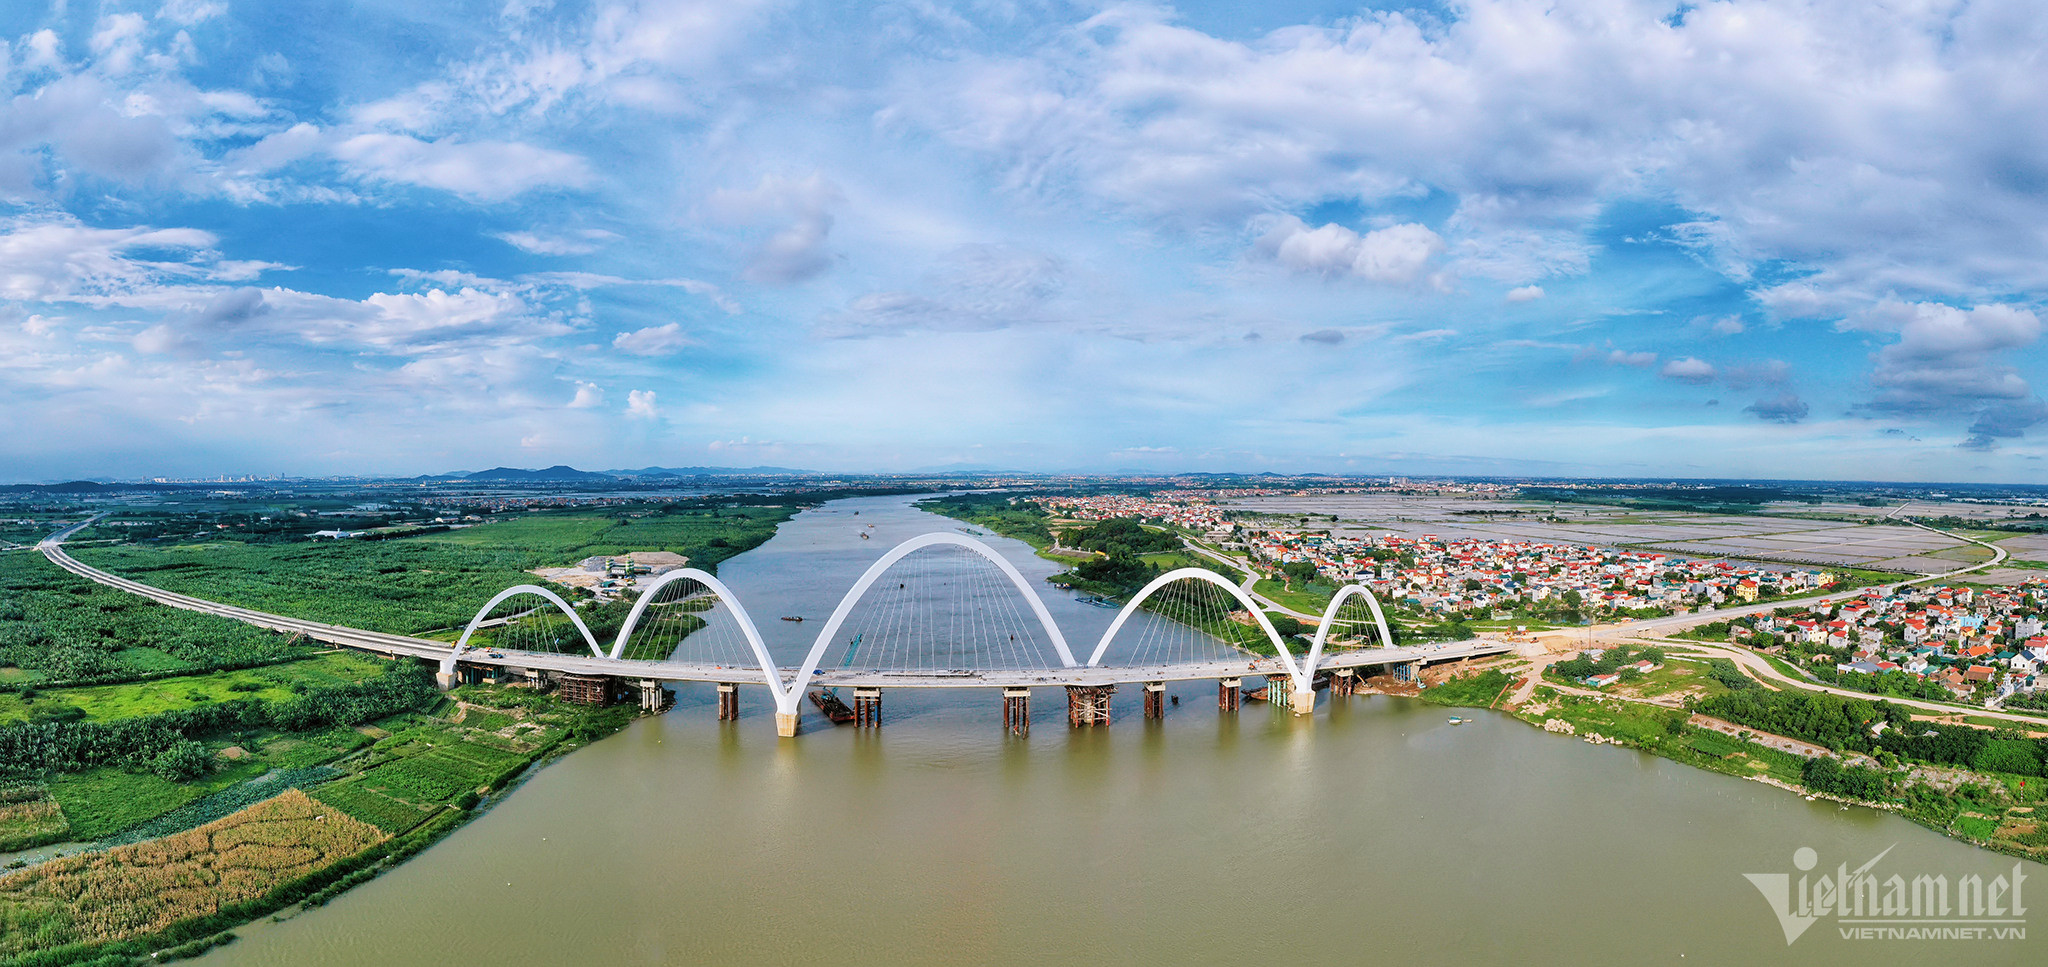 Cây cầu hình rồng cuộn gần 2.000 tỷ đồng ở Bắc Ninh sắp thông xe